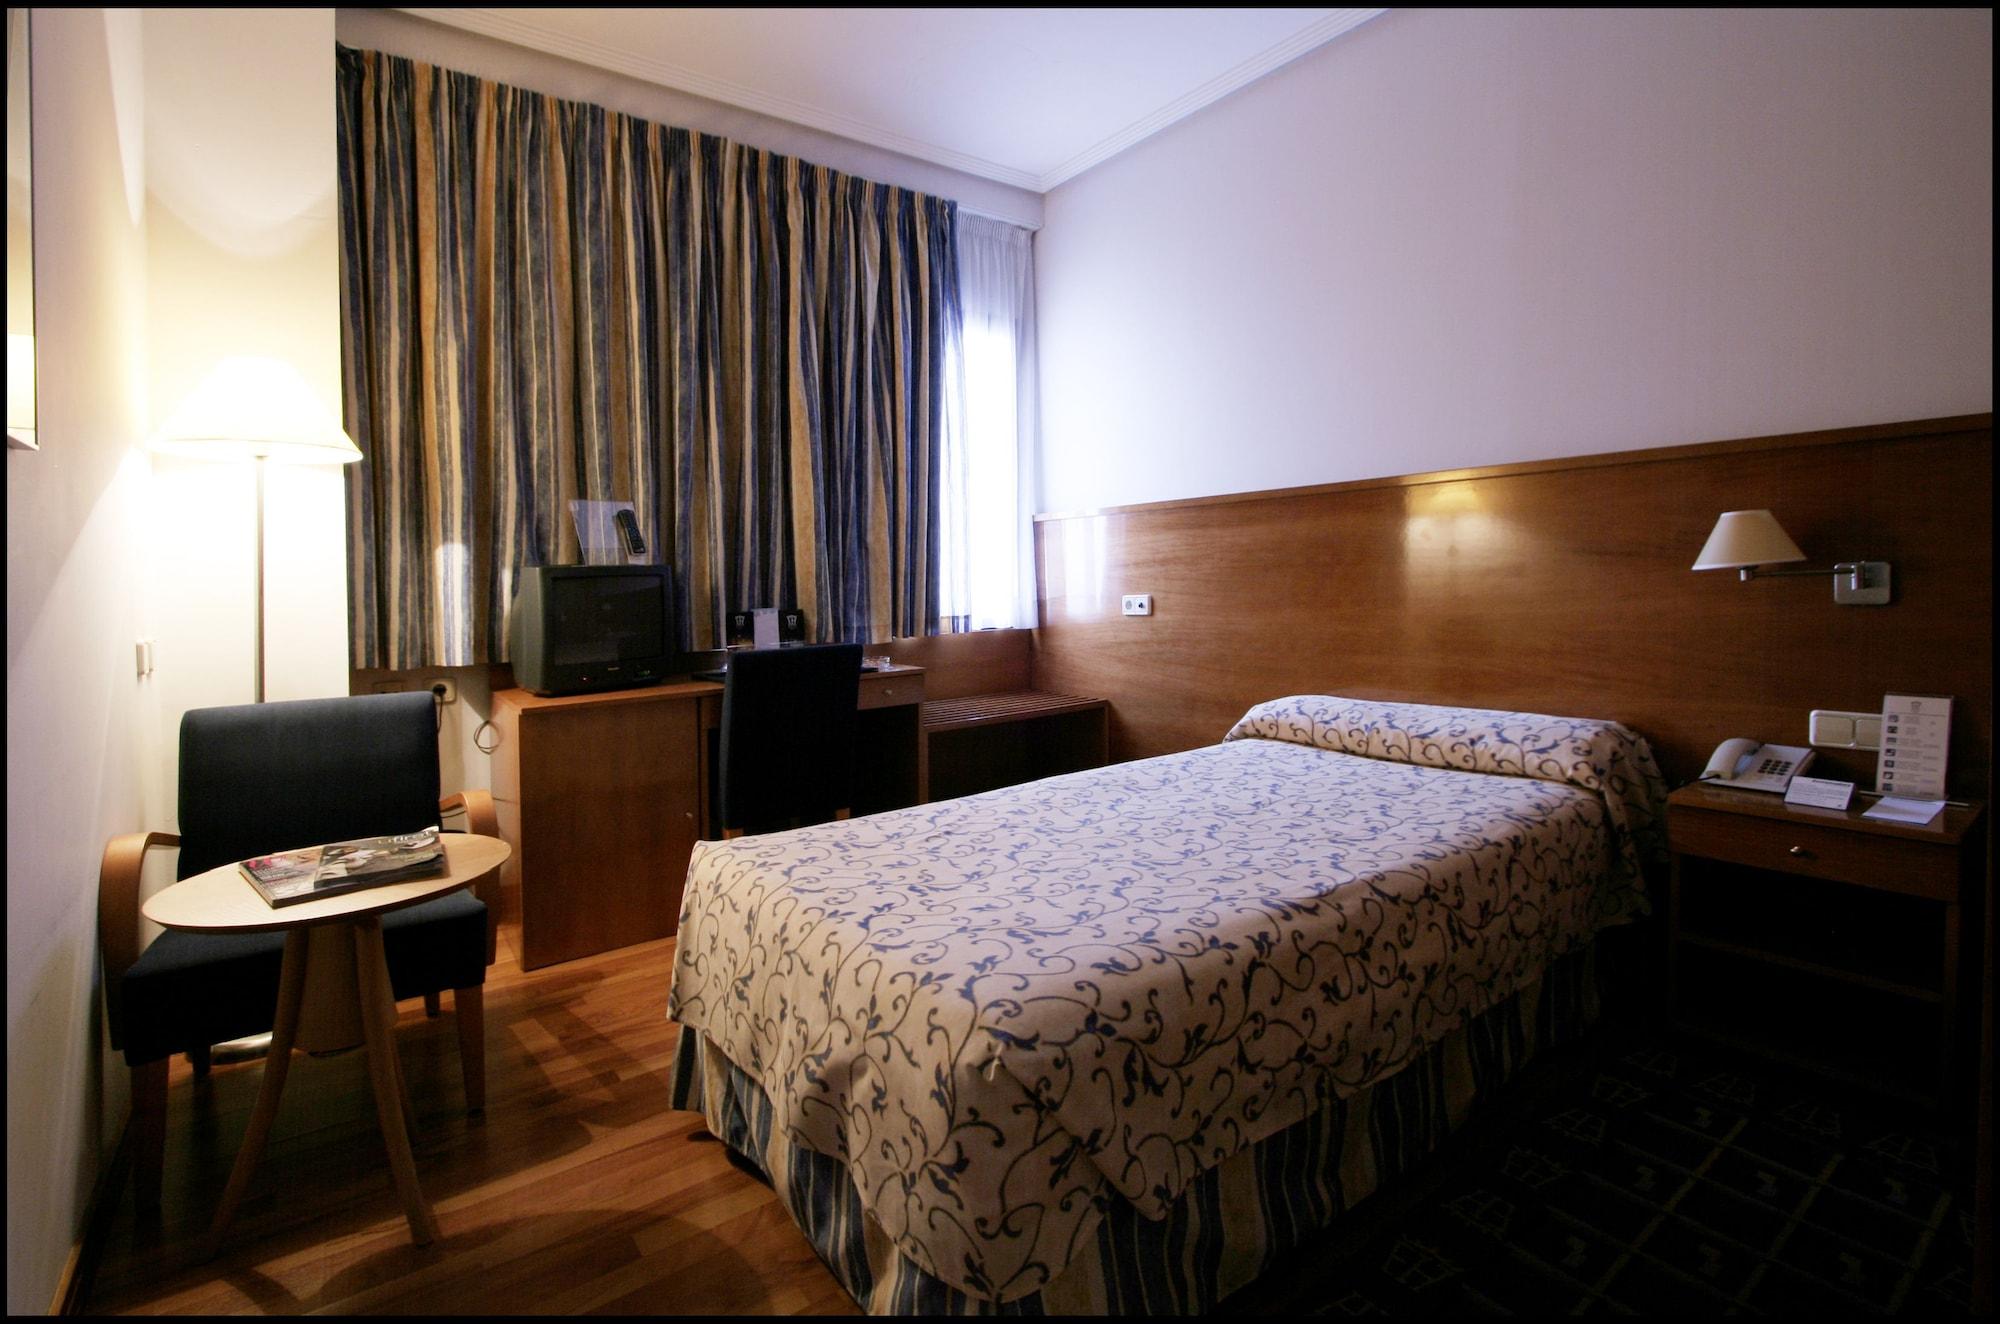 Extremadura Hotel Caces Extérieur photo